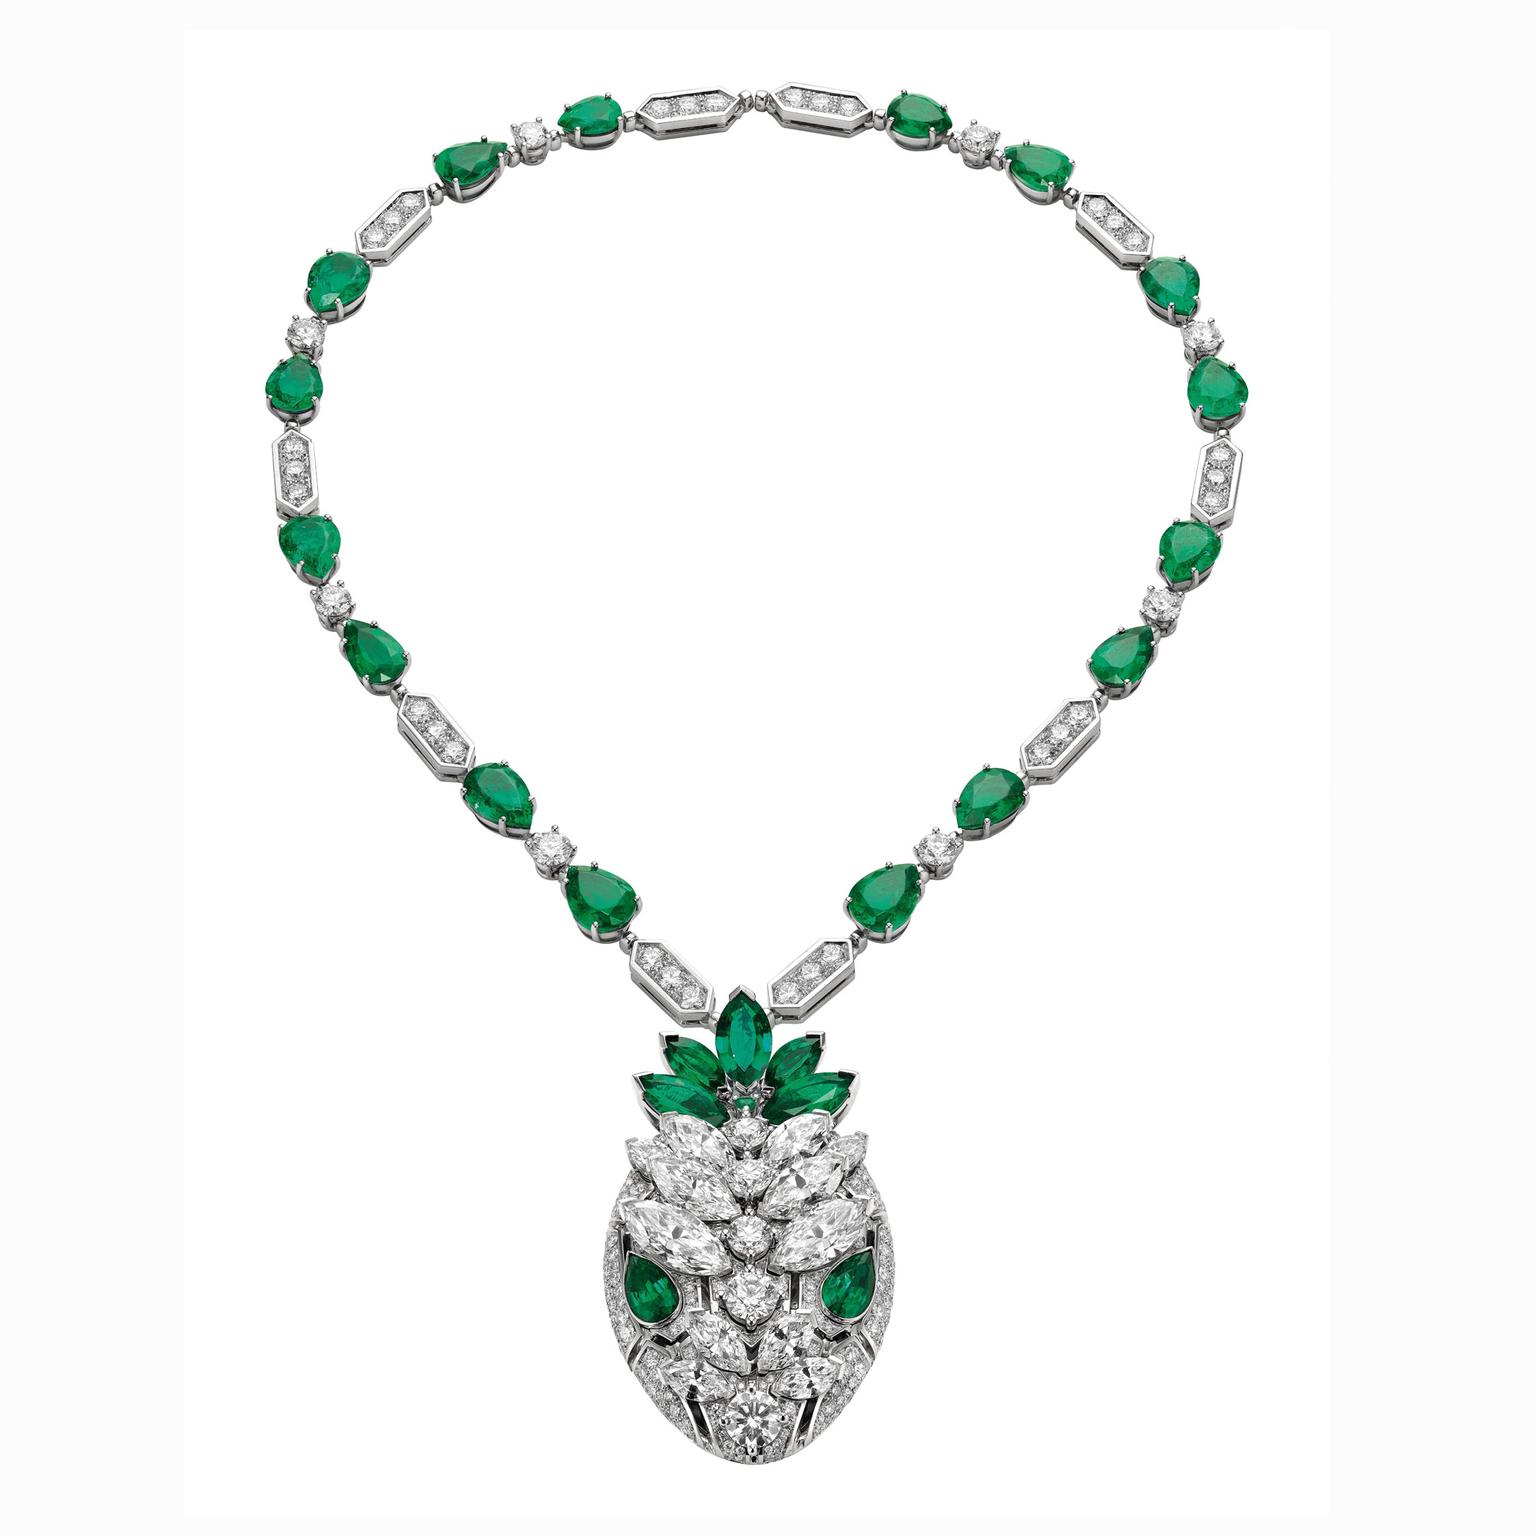 Bulgari Serpenti diamond and emerald necklace